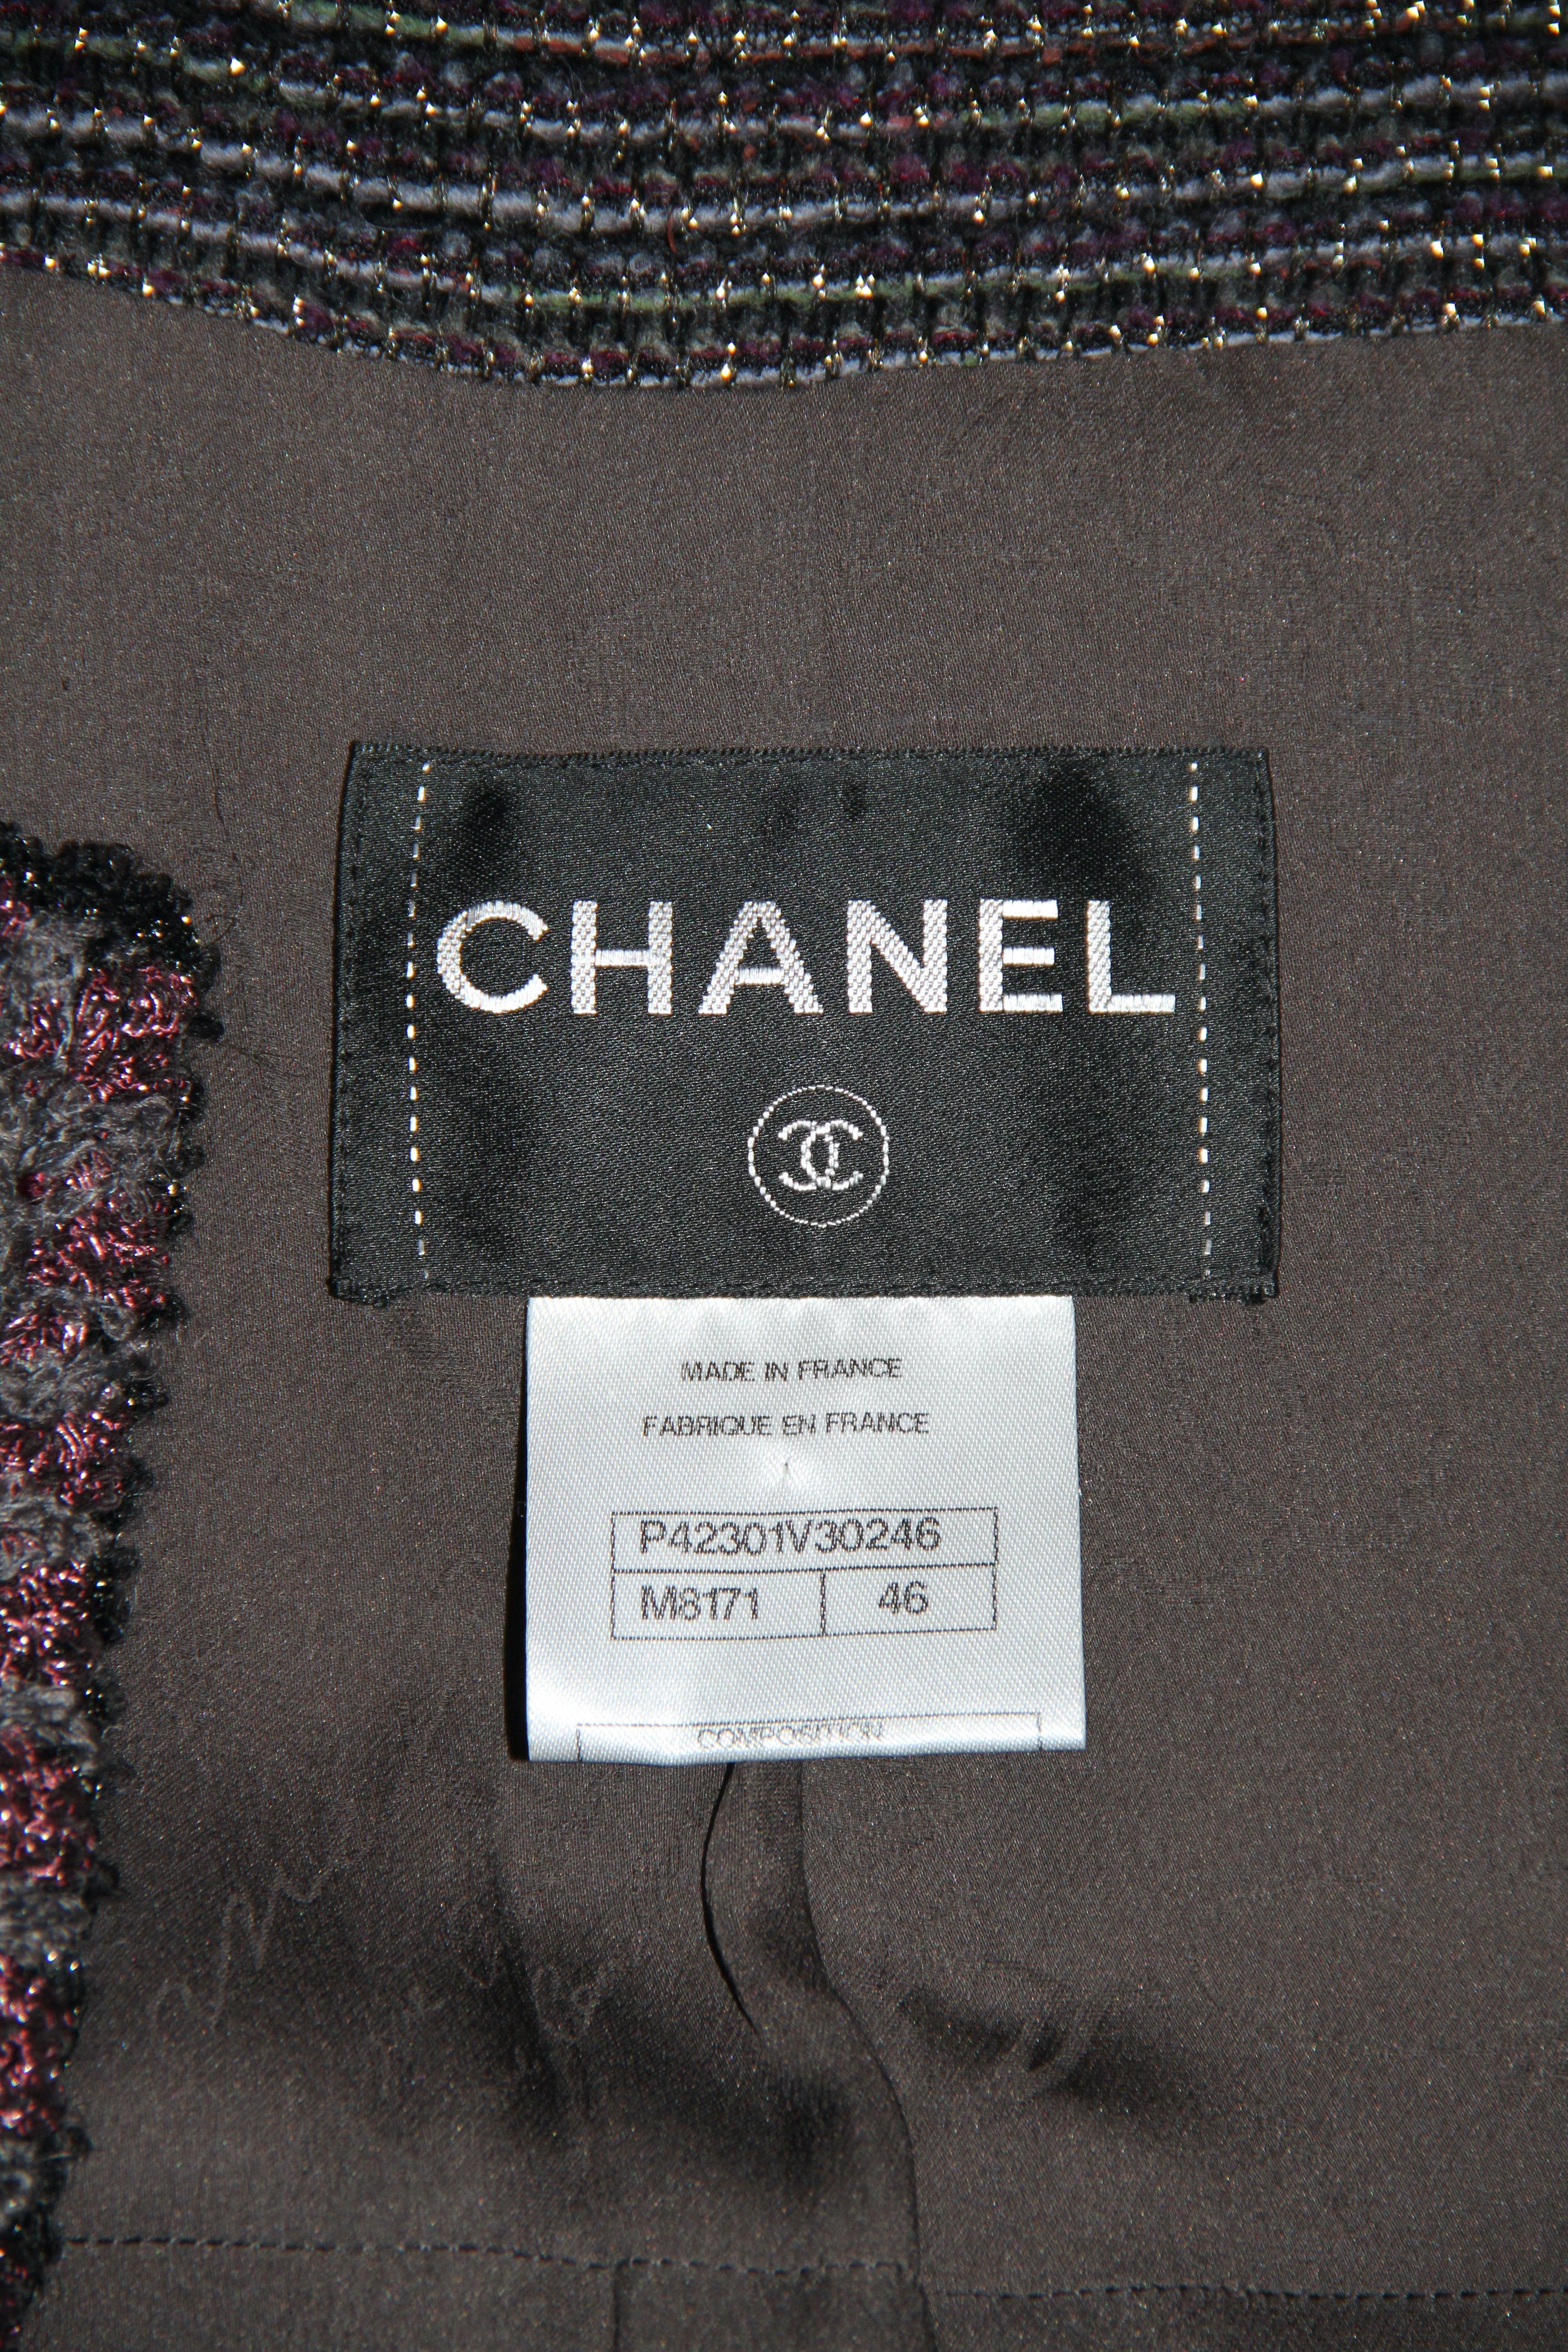 Chanel Grey Burgundy Tweed Coat Fall 2011 Ready to Wear 2